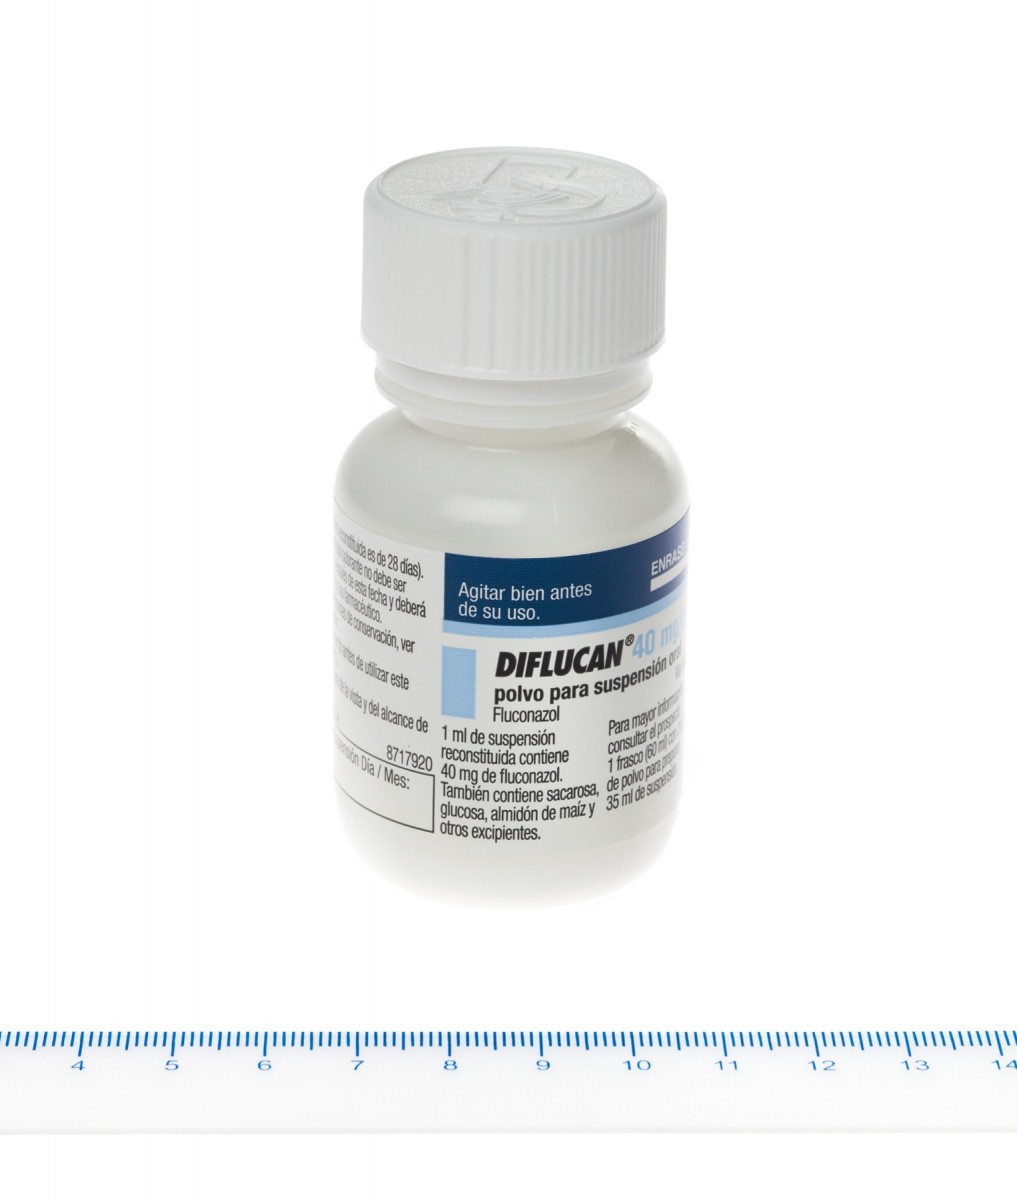 DIFLUCAN 40 mg/ml POLVO PARA SUSPENSION ORAL, 1 frasco de 35 ml fotografía de la forma farmacéutica.